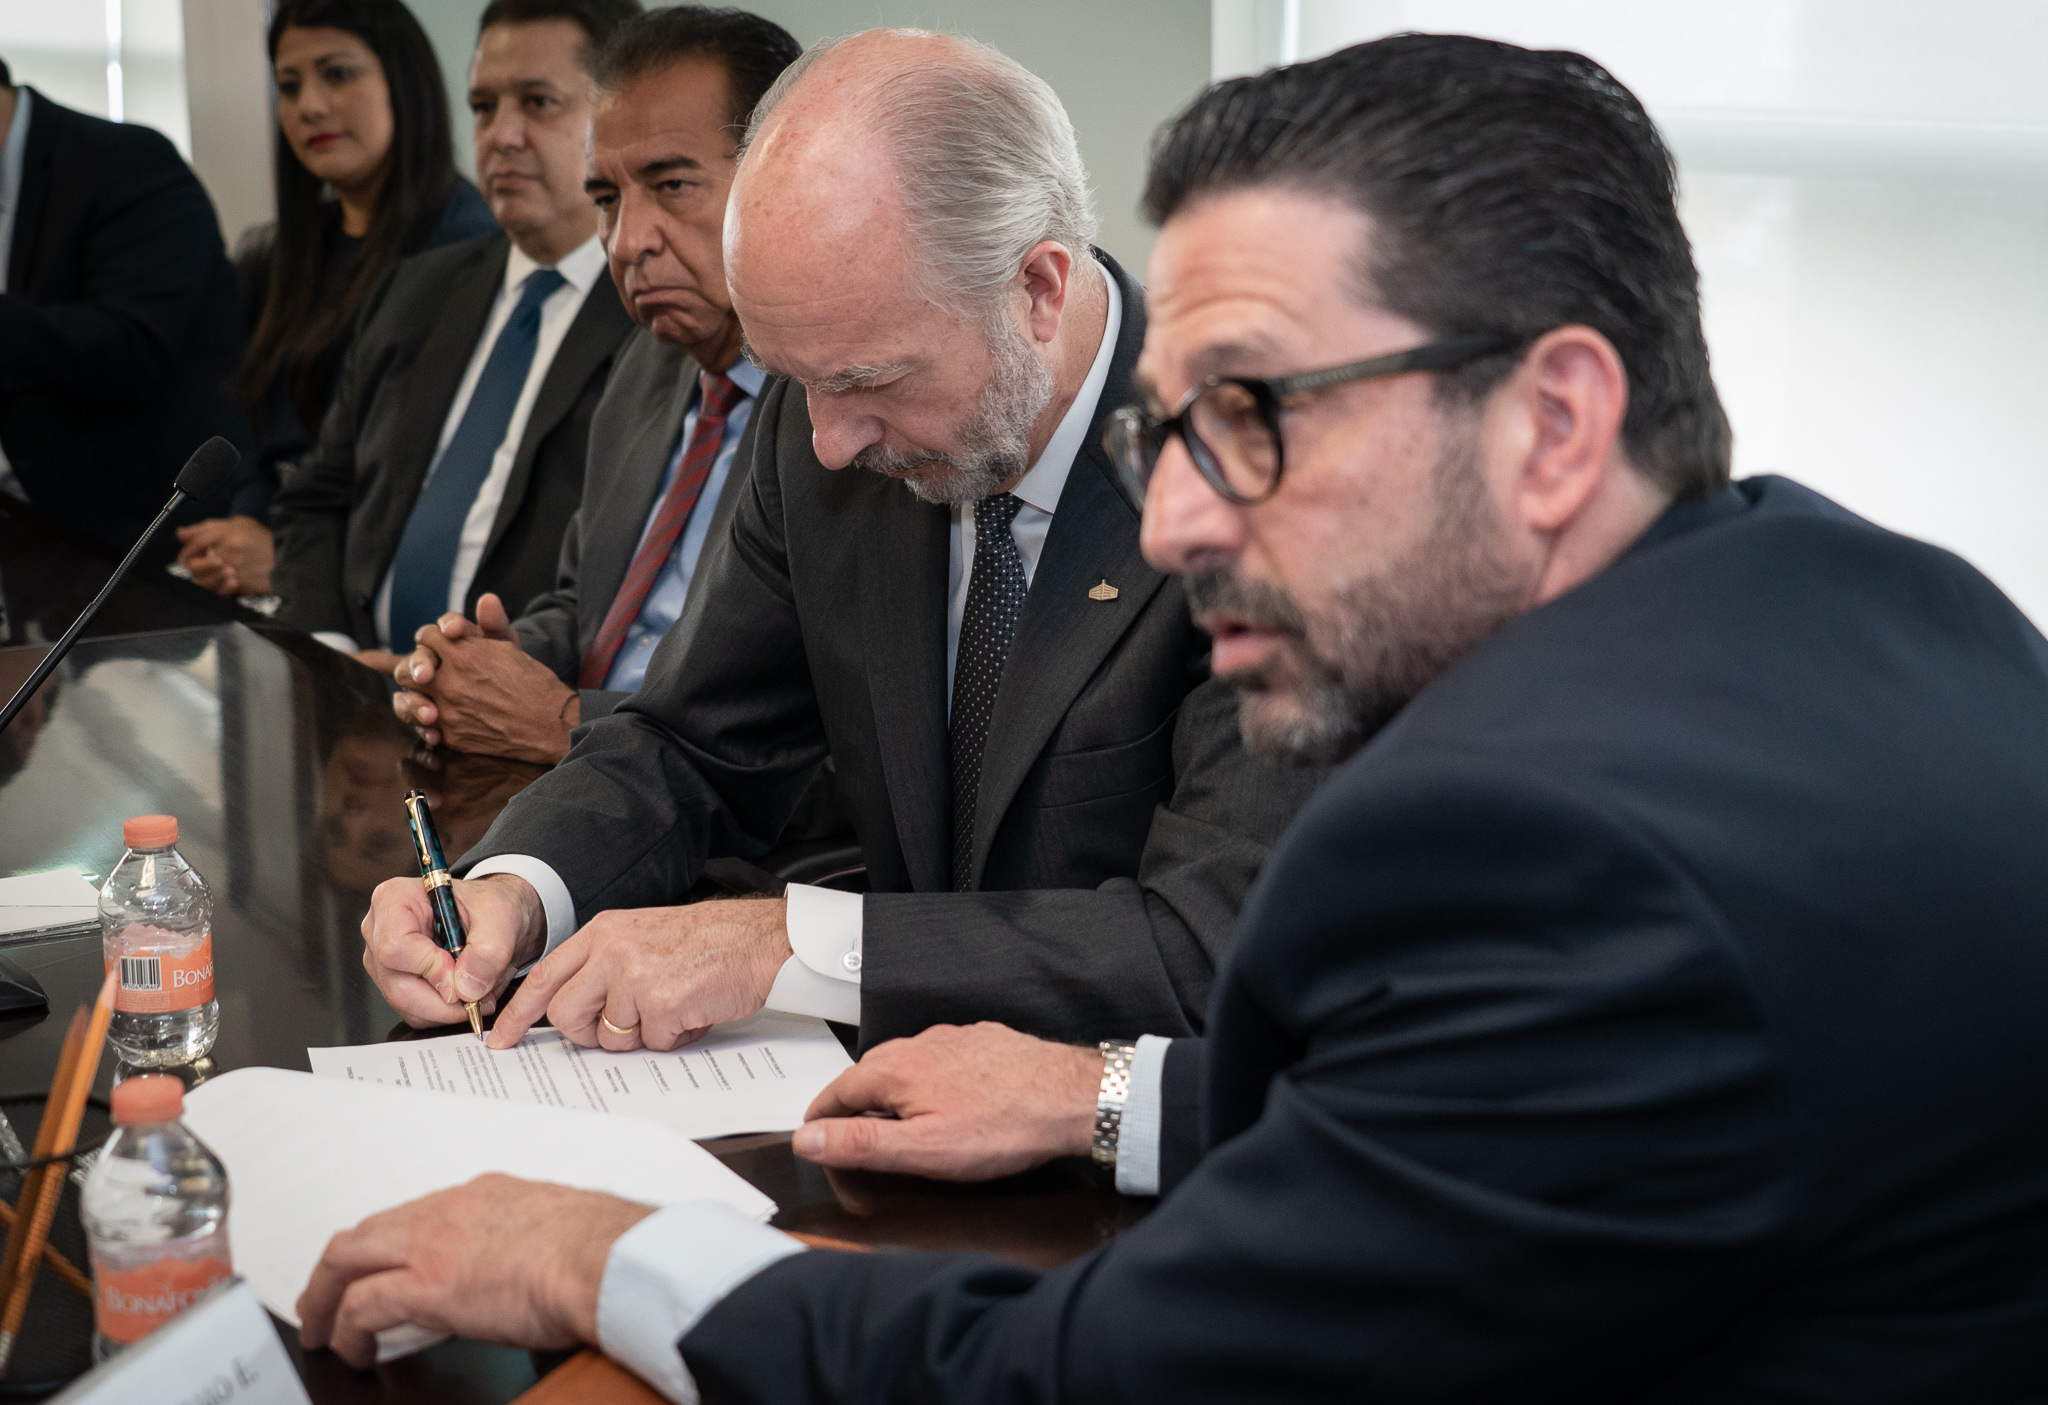  Javier de la Calle, Director General del Nacional Monte de Piedad firmando el acuerdo